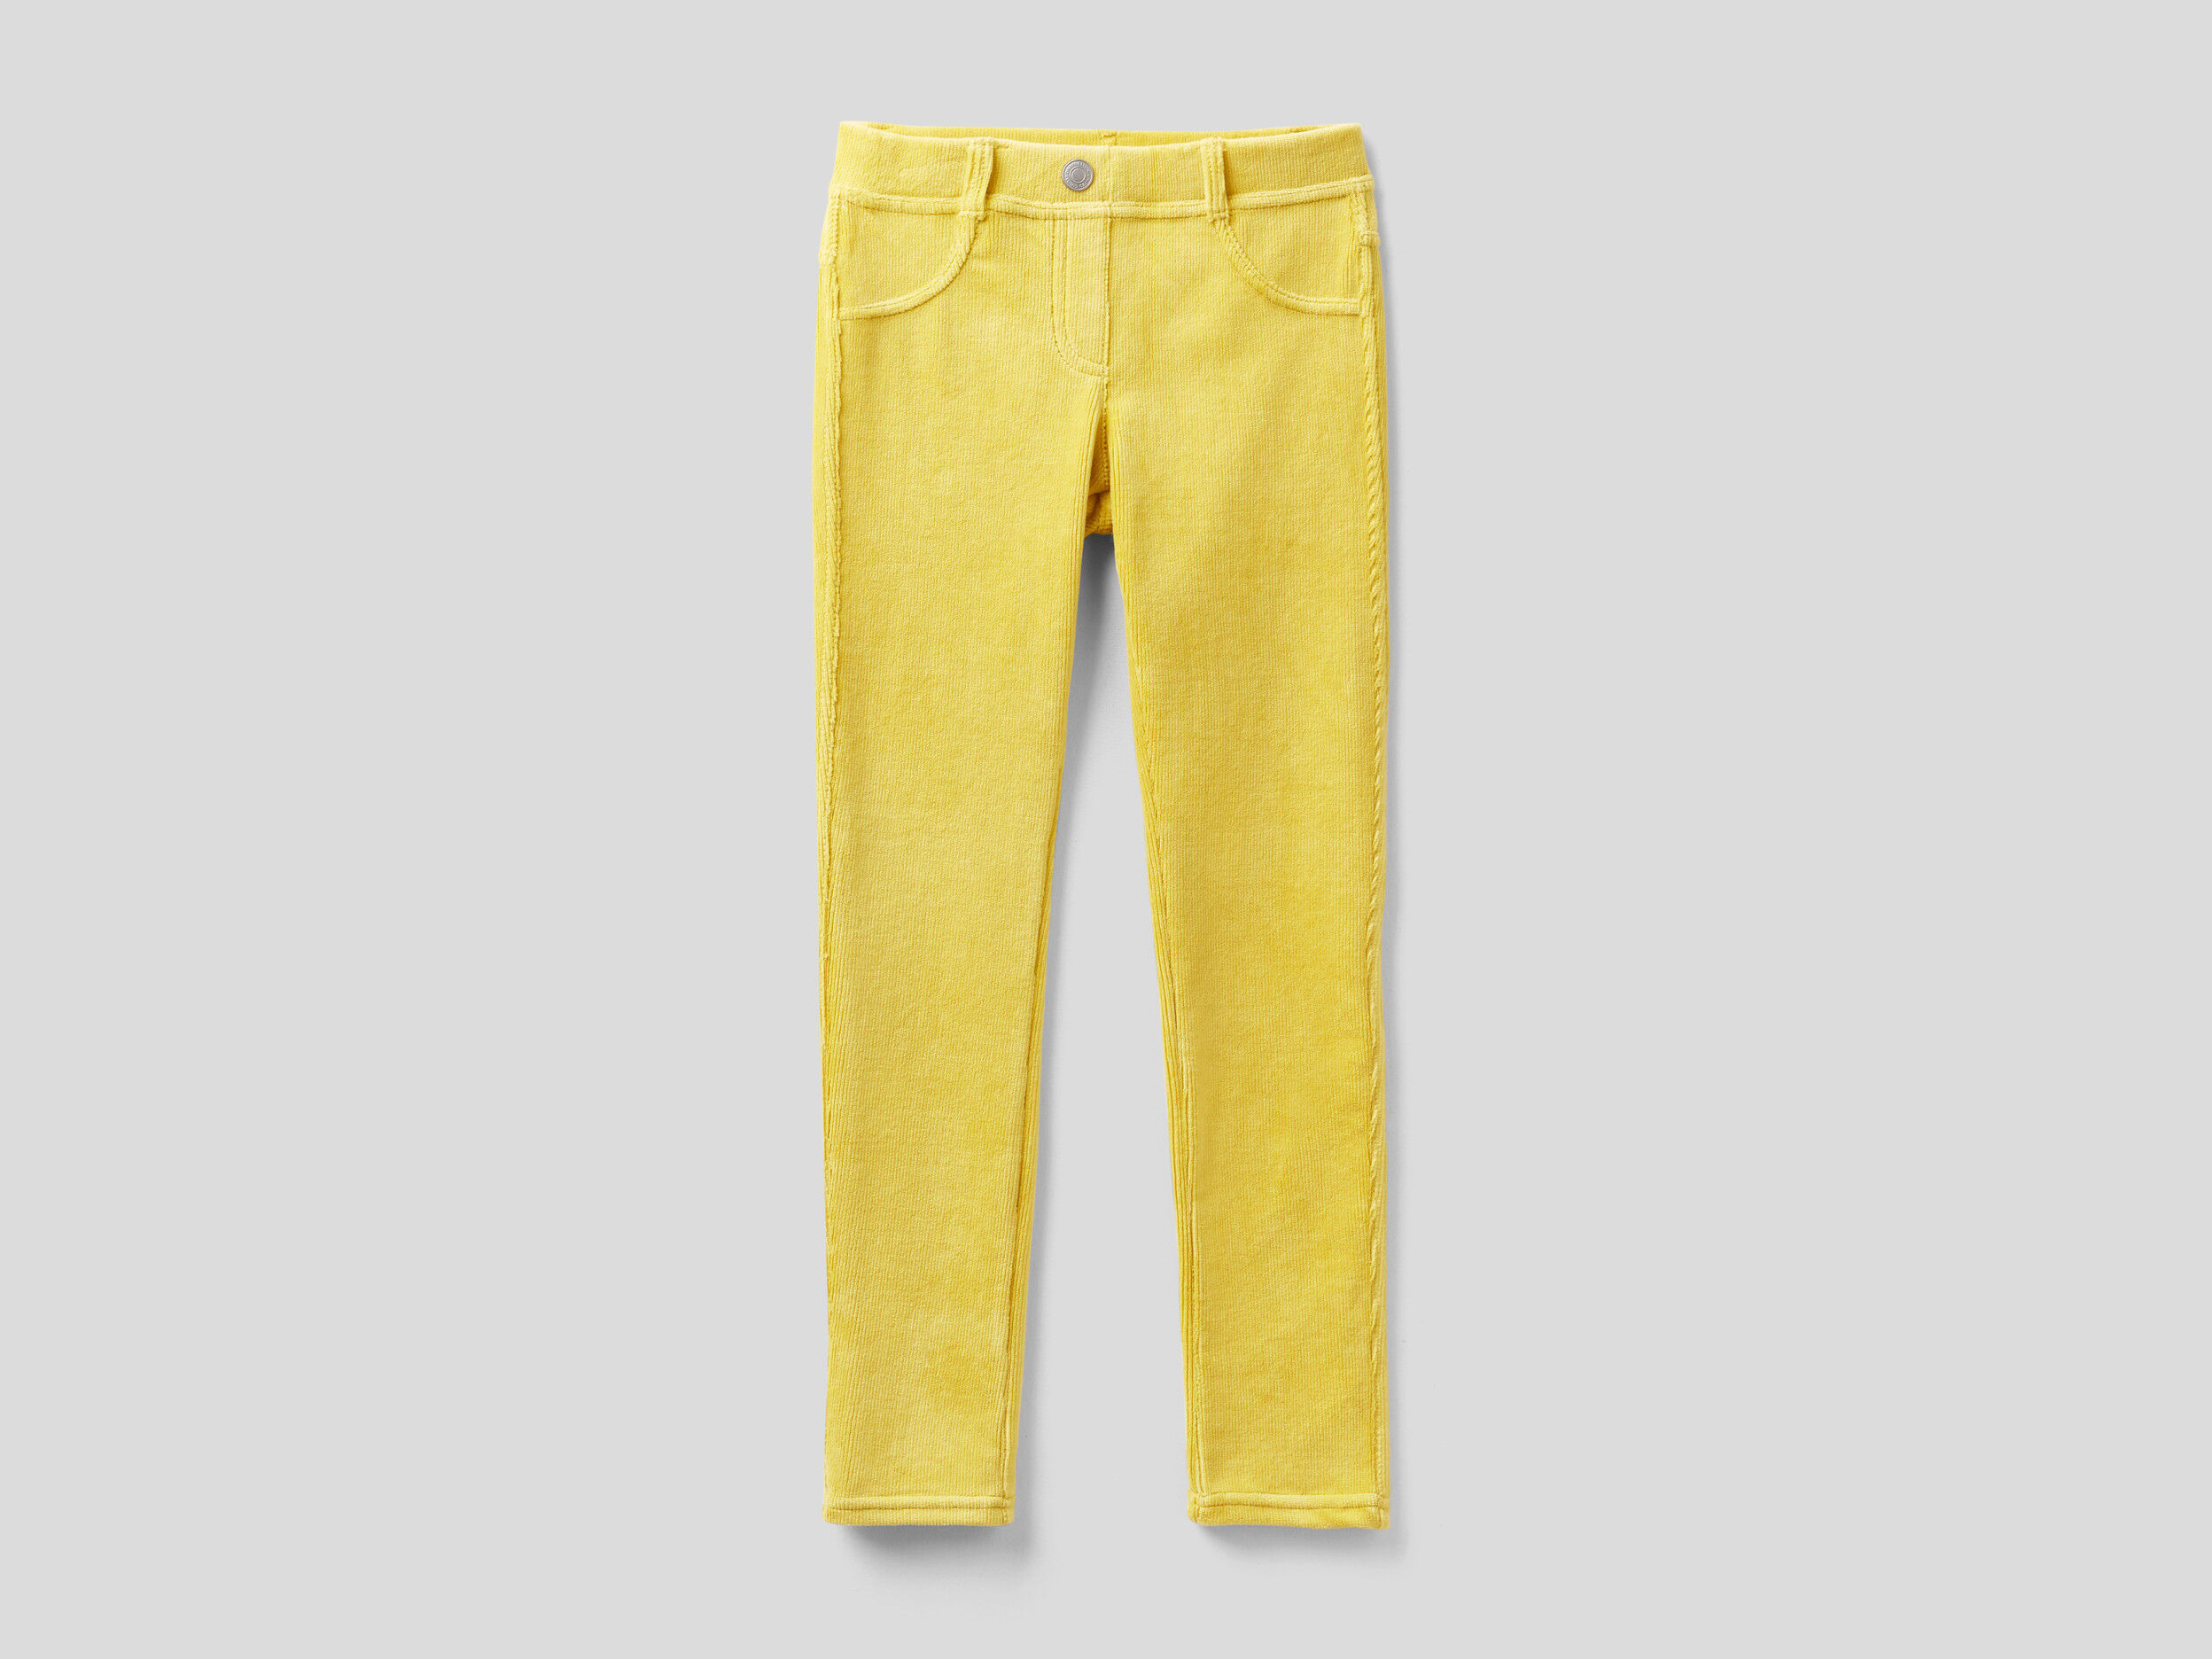 Pantaloni Super Skinny In Ciniglia United Colors of Benetton Abbigliamento Pantaloni e jeans Pantaloni Pantaloni slim & skinny 